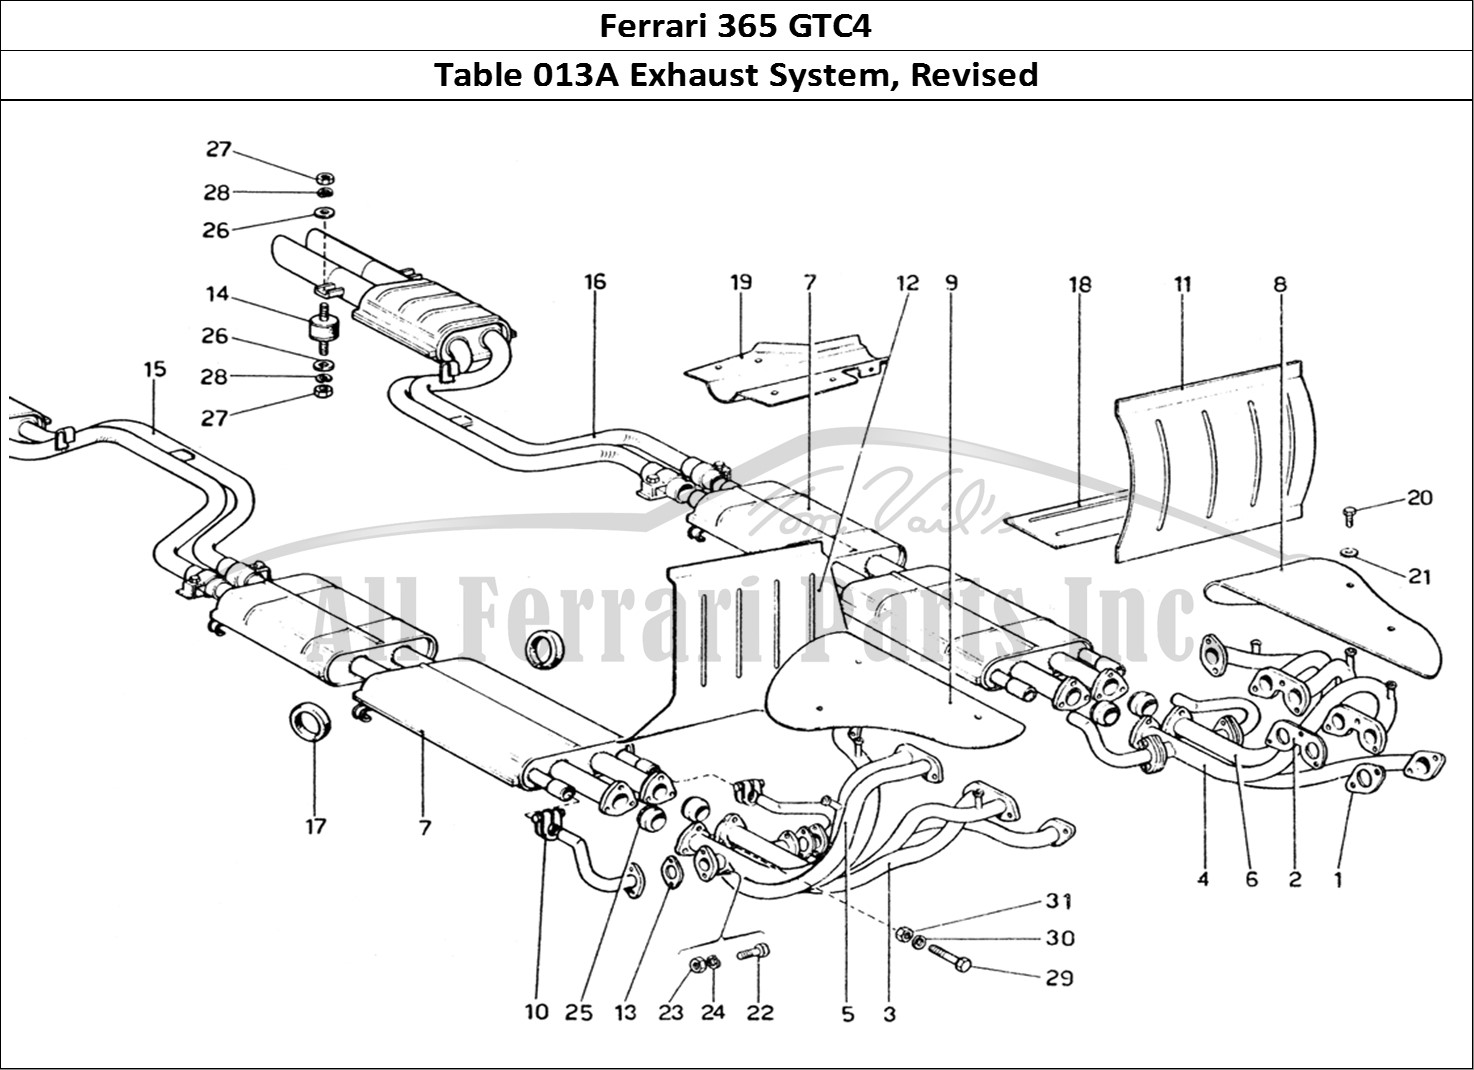 Ferrari Parts Ferrari 365 GTC4 (Mechanical) Page 013 Exhaust system - Revision